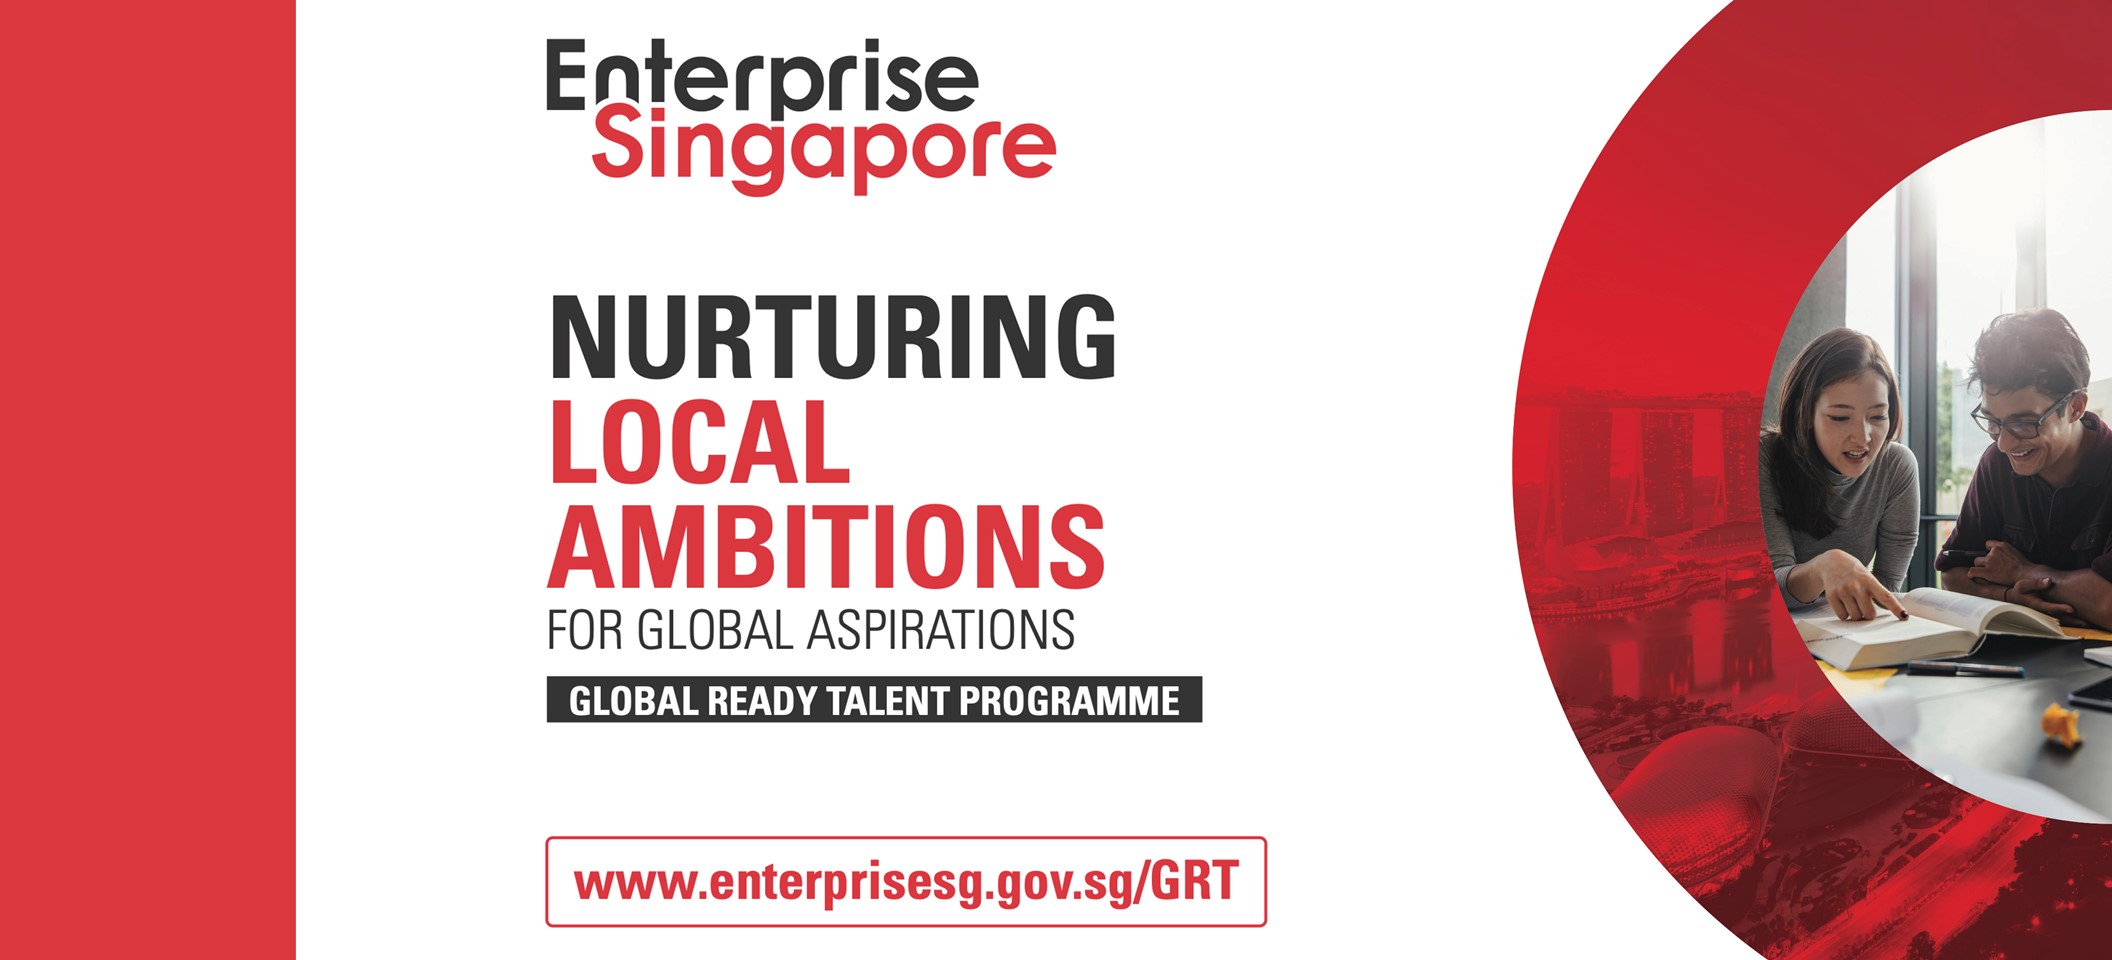 Global Ready Talent Programme (GRT)